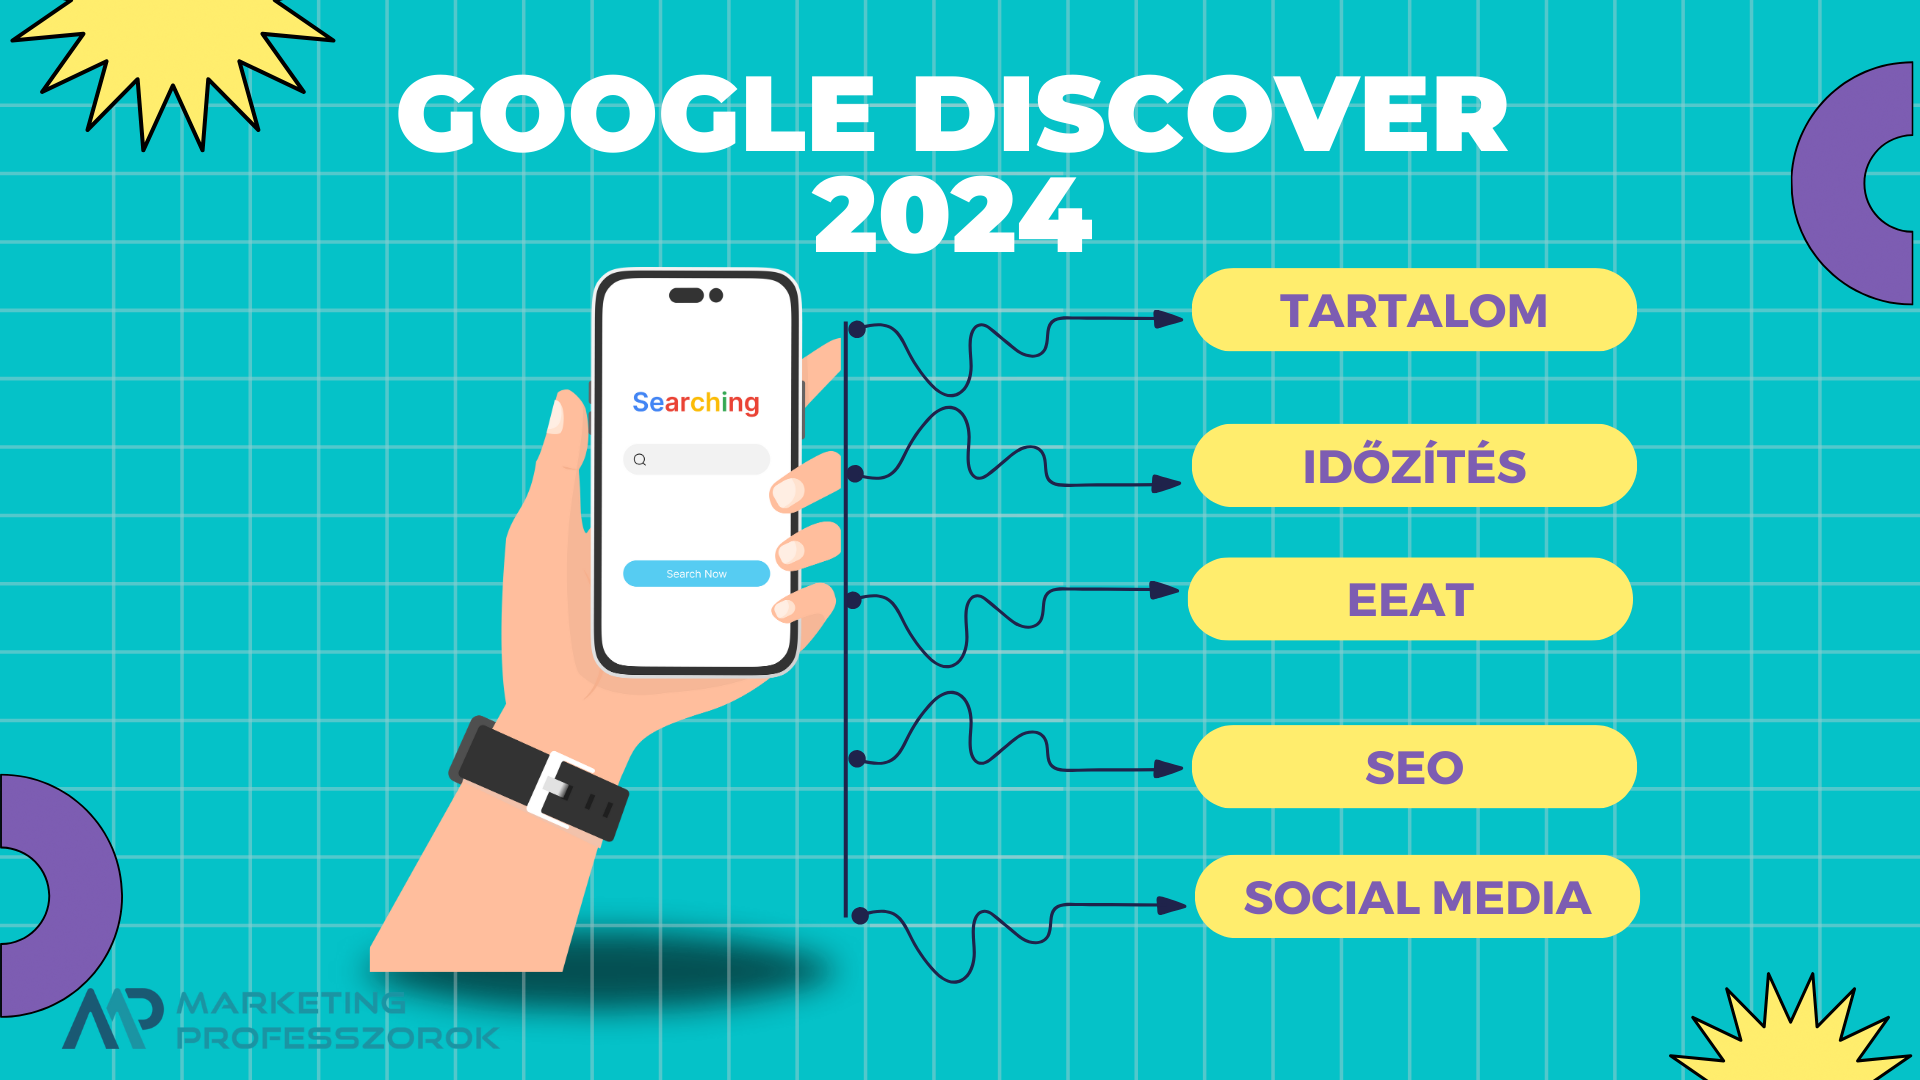 Google Discover 2024: így kerüéj be a Google Discober hírfolyamába könnyen